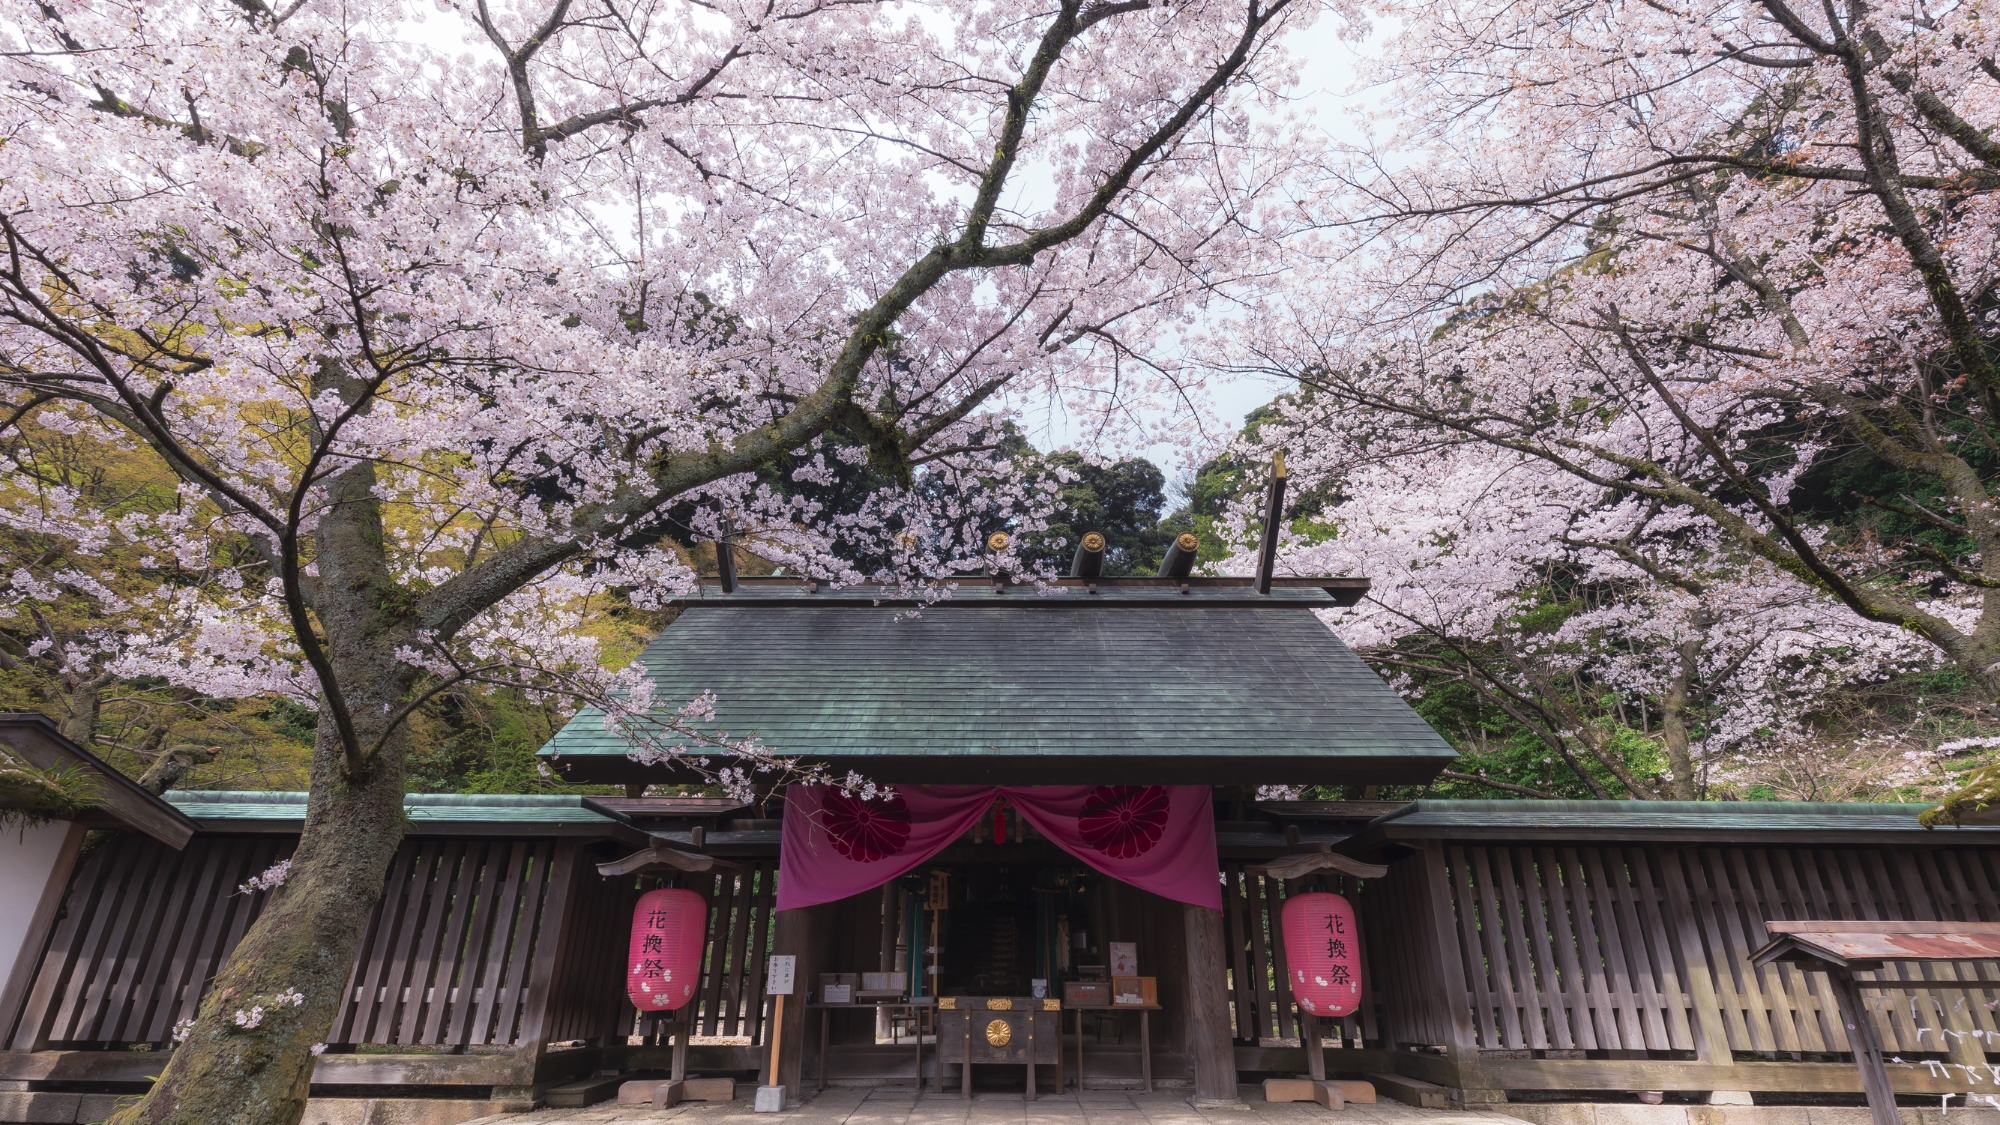 金崎宮では千本桜が咲き乱れるなか「花換えまつり」が開催されます。夜桜のライトアップも